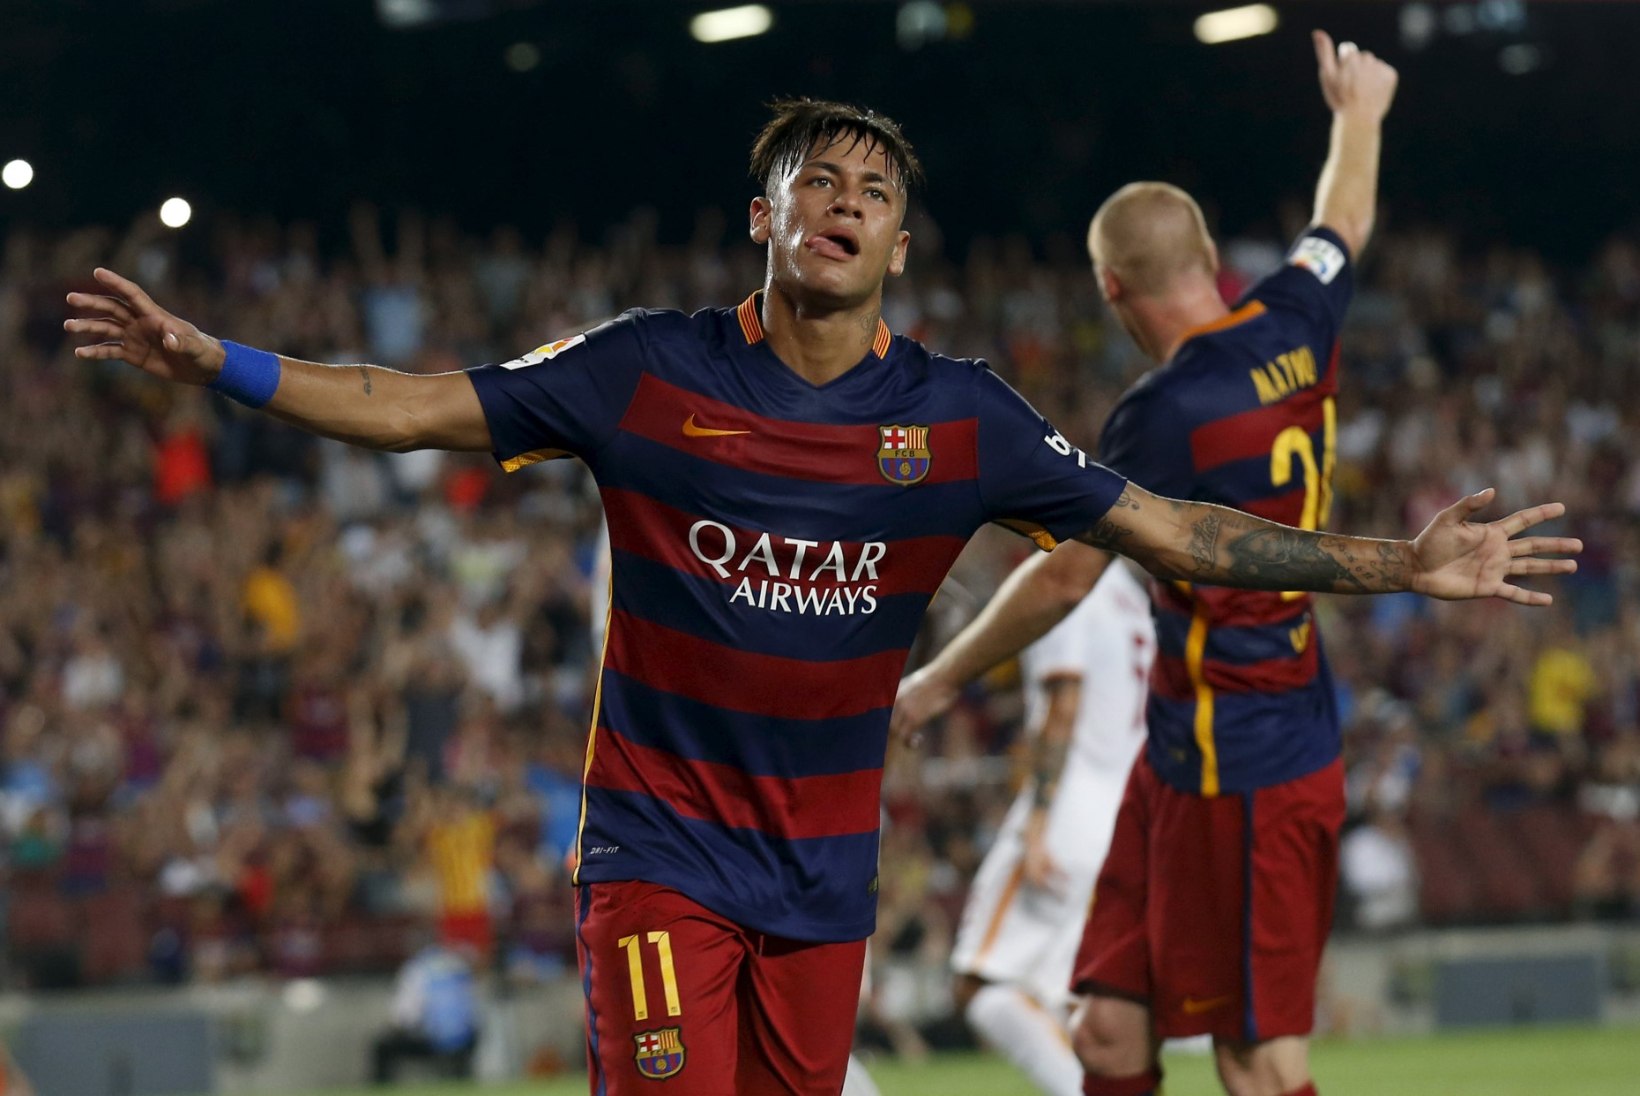 MIKS KÜLL? Neymar on nõus lahkuma Barcelonast, et liituda Manchester Unitediga